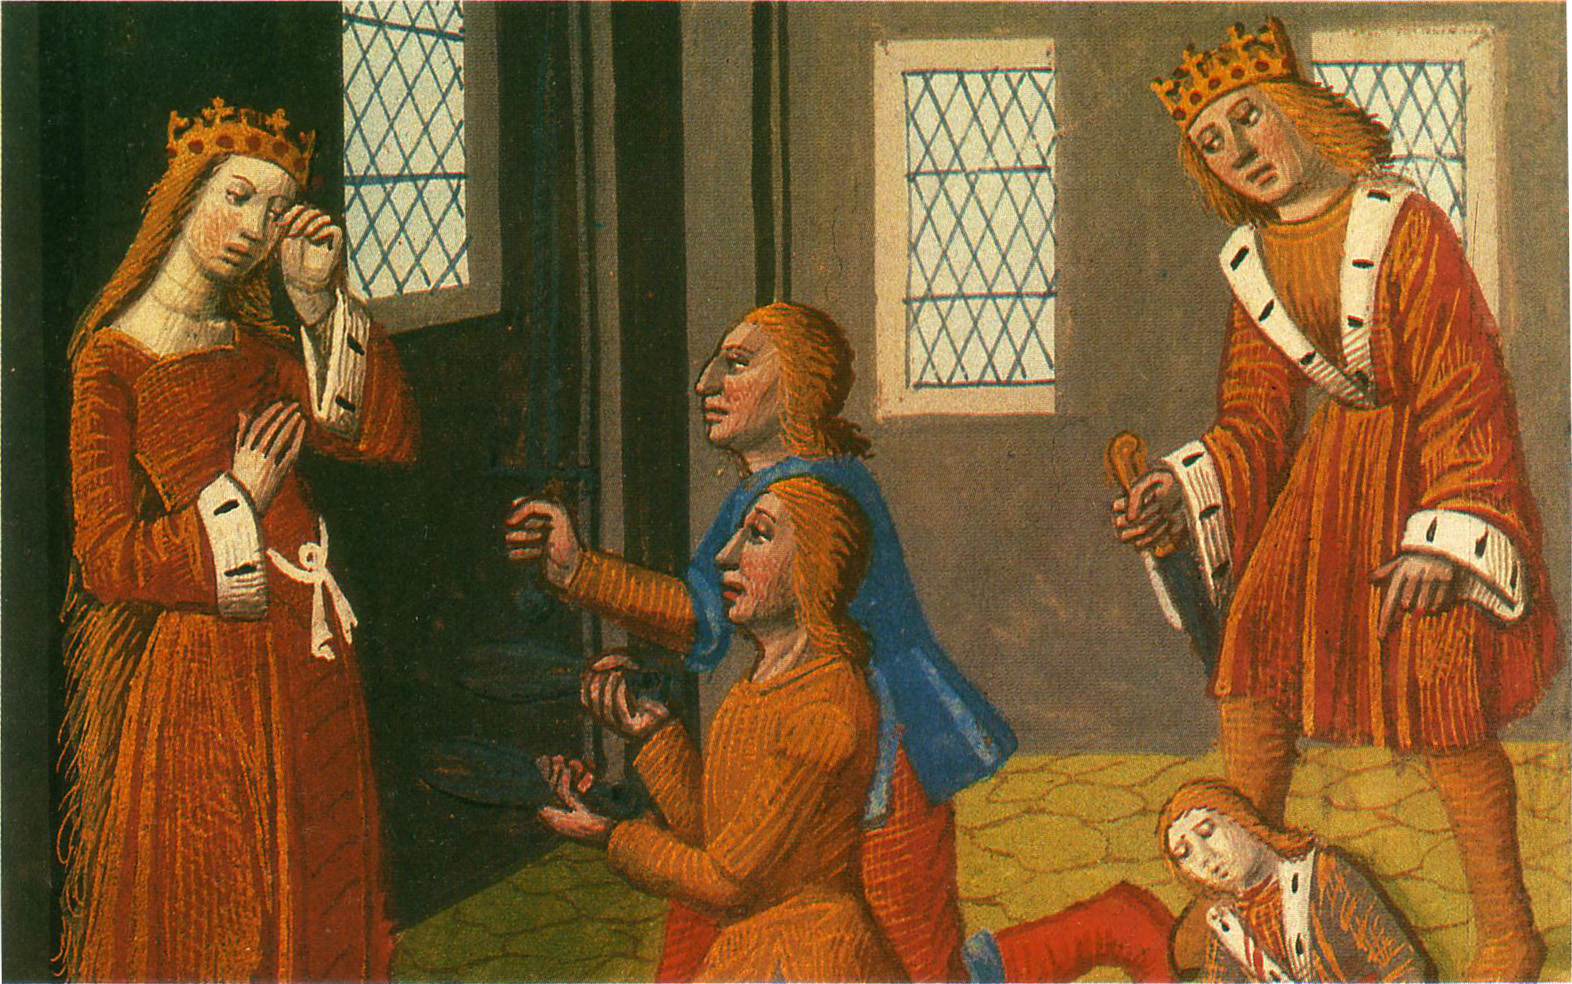 Clotaire I. (Chlothar) und Childebert I. bringen ihre Neffen um während Clotilde daneben steht und weint, Manuskript aus dem 15. Jahrhundert, public domain/gemeinfrei, 